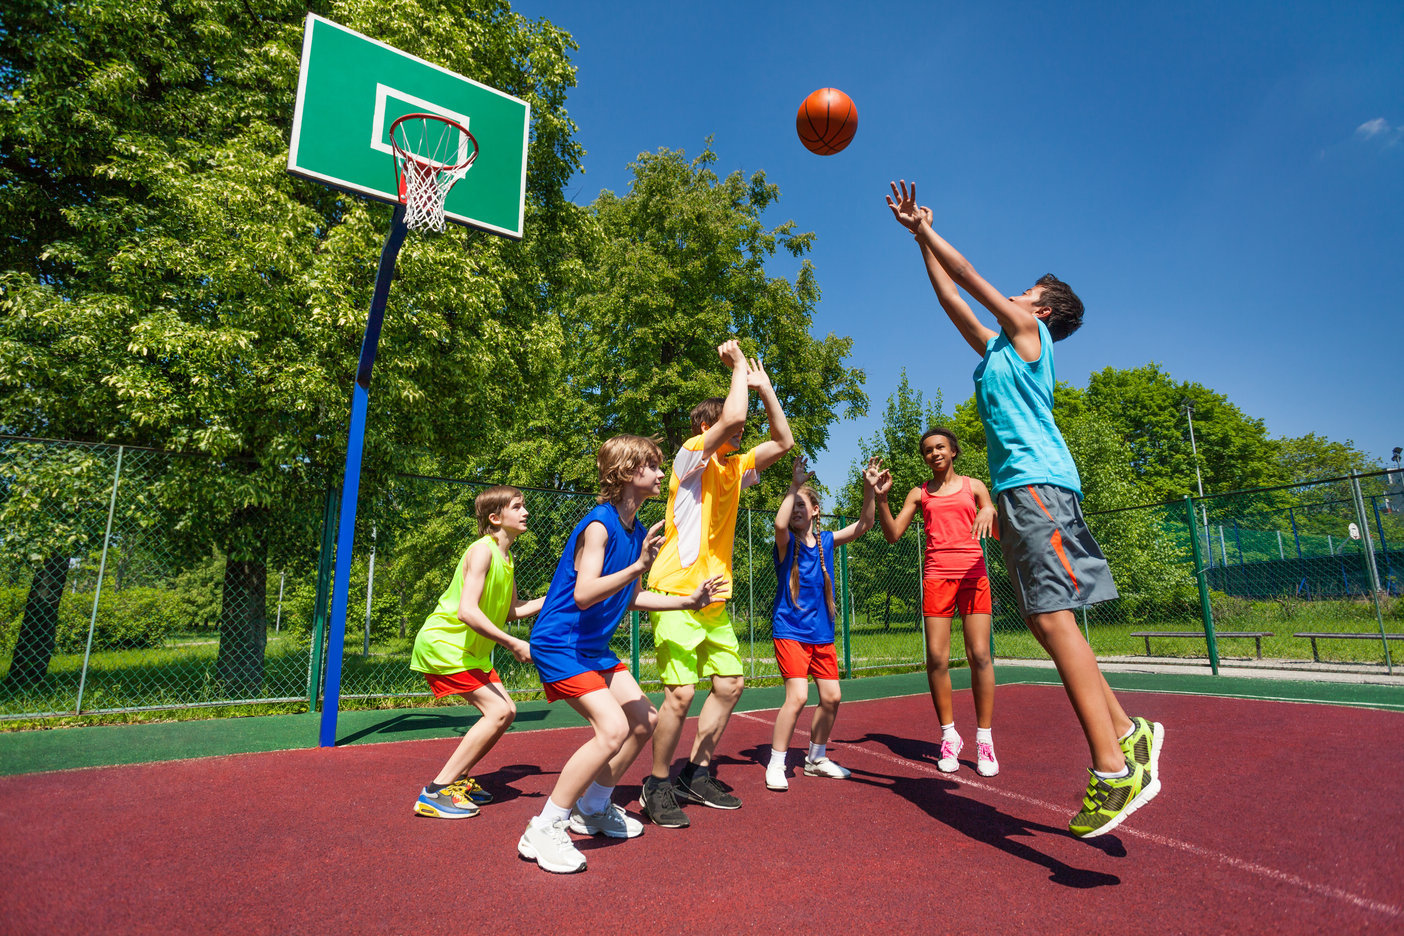 Игры летом в школе. Спортивные игры. Баскетбол на улице дети. Летний спорт. Спортивные игры в лагере.